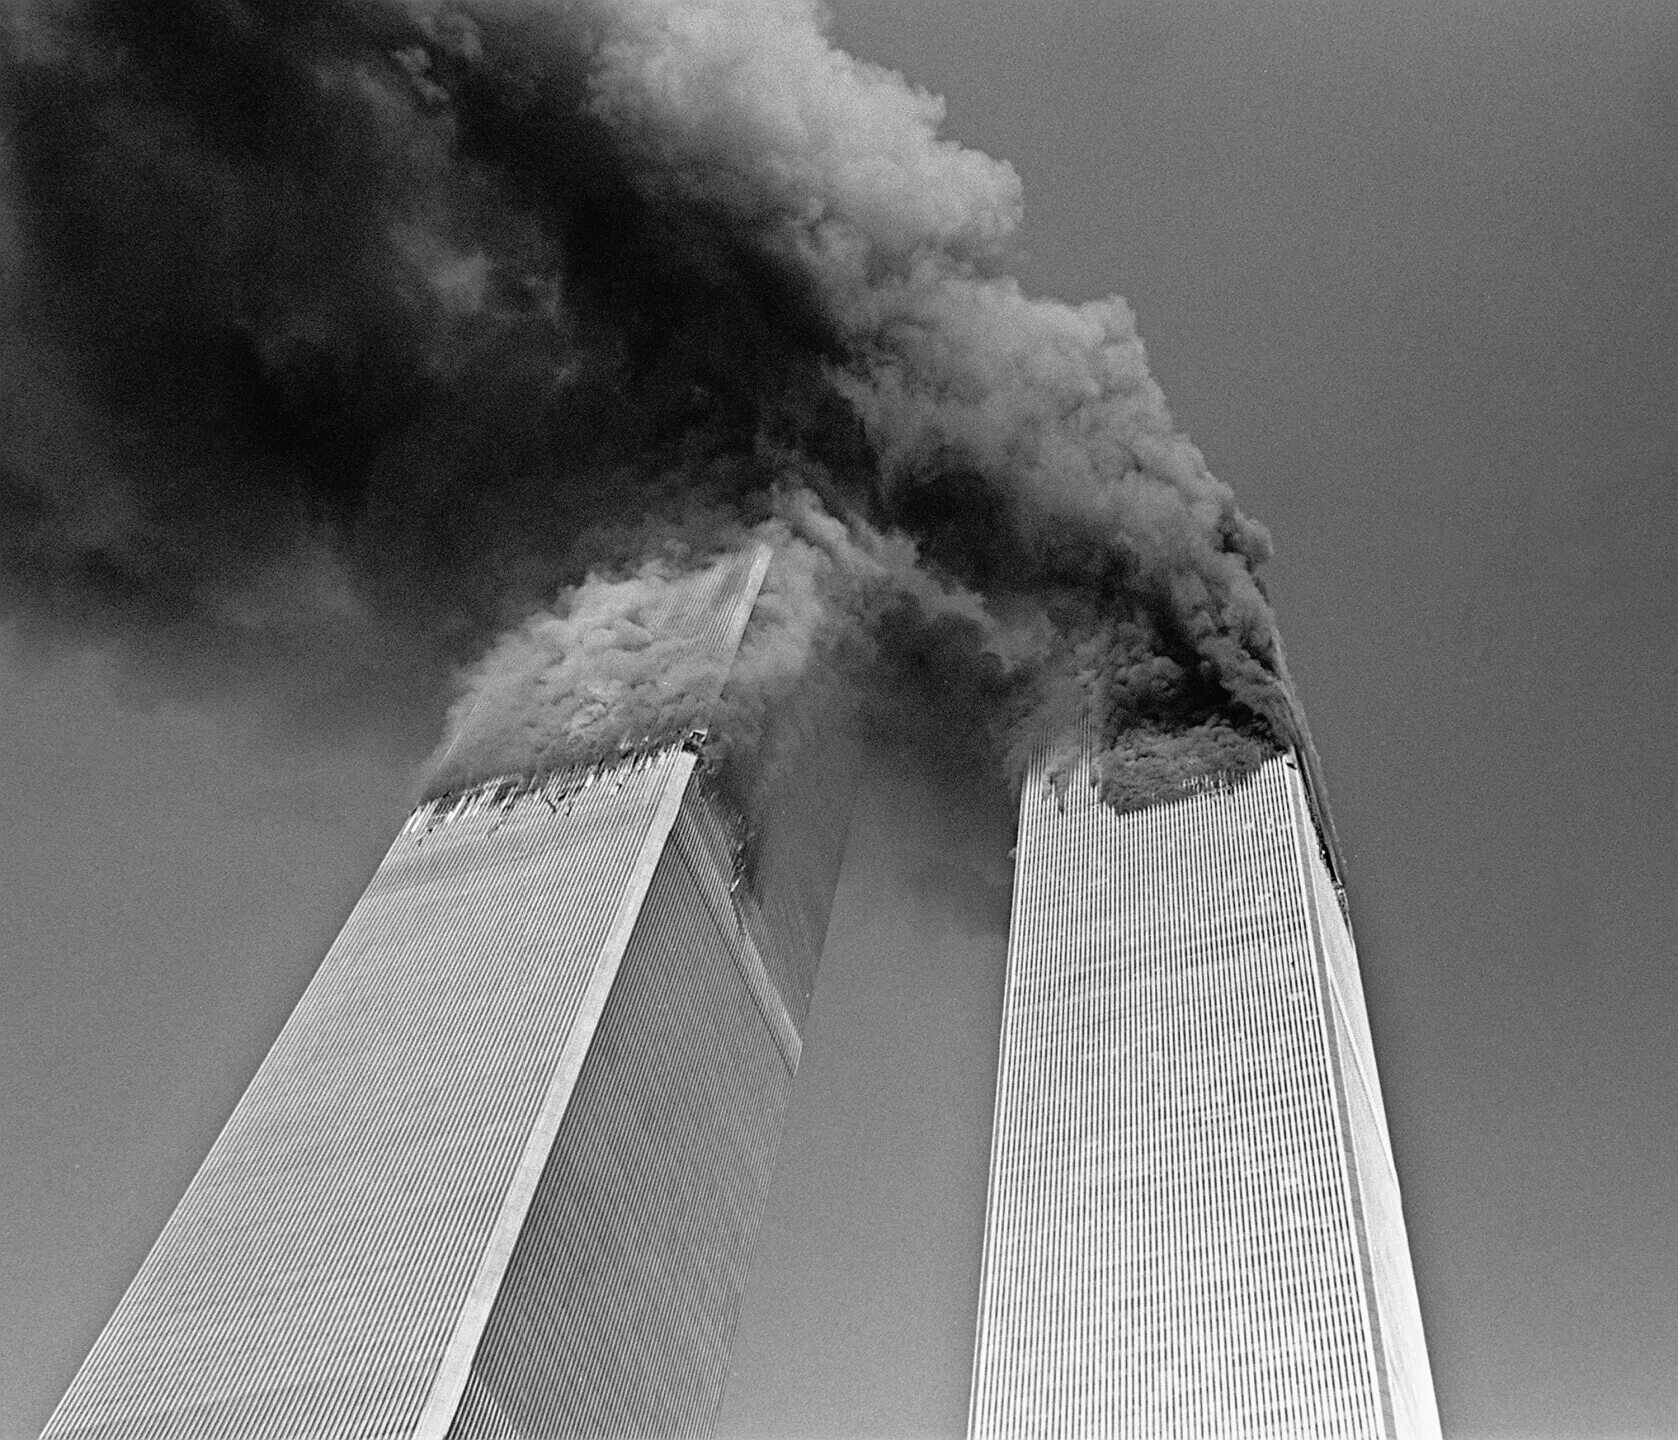 Башни-Близнецы 11 сентября 2001. Башни ВТЦ 11 сентября 2001. Всемирный торговый центр в Нью-Йорке 11 сентября.